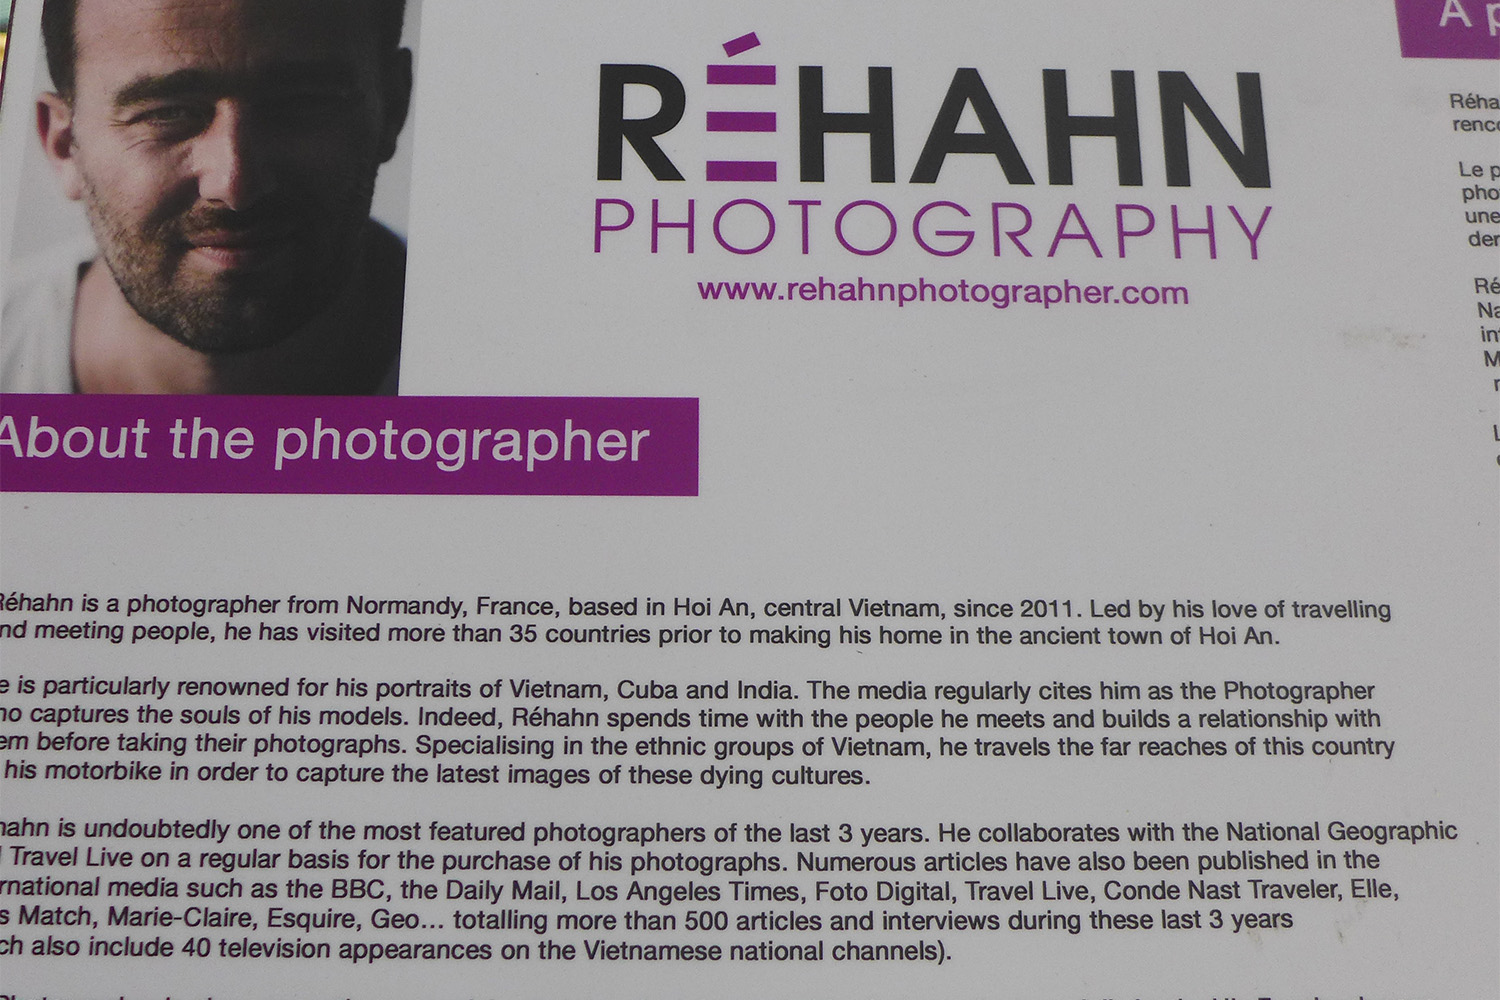 Le photographe est un français ! Il s’apelle Rehahn et est né en Normandie ! Allez voir son site : http://www.rehahnphotographer.com/bio-rehahn-photography/